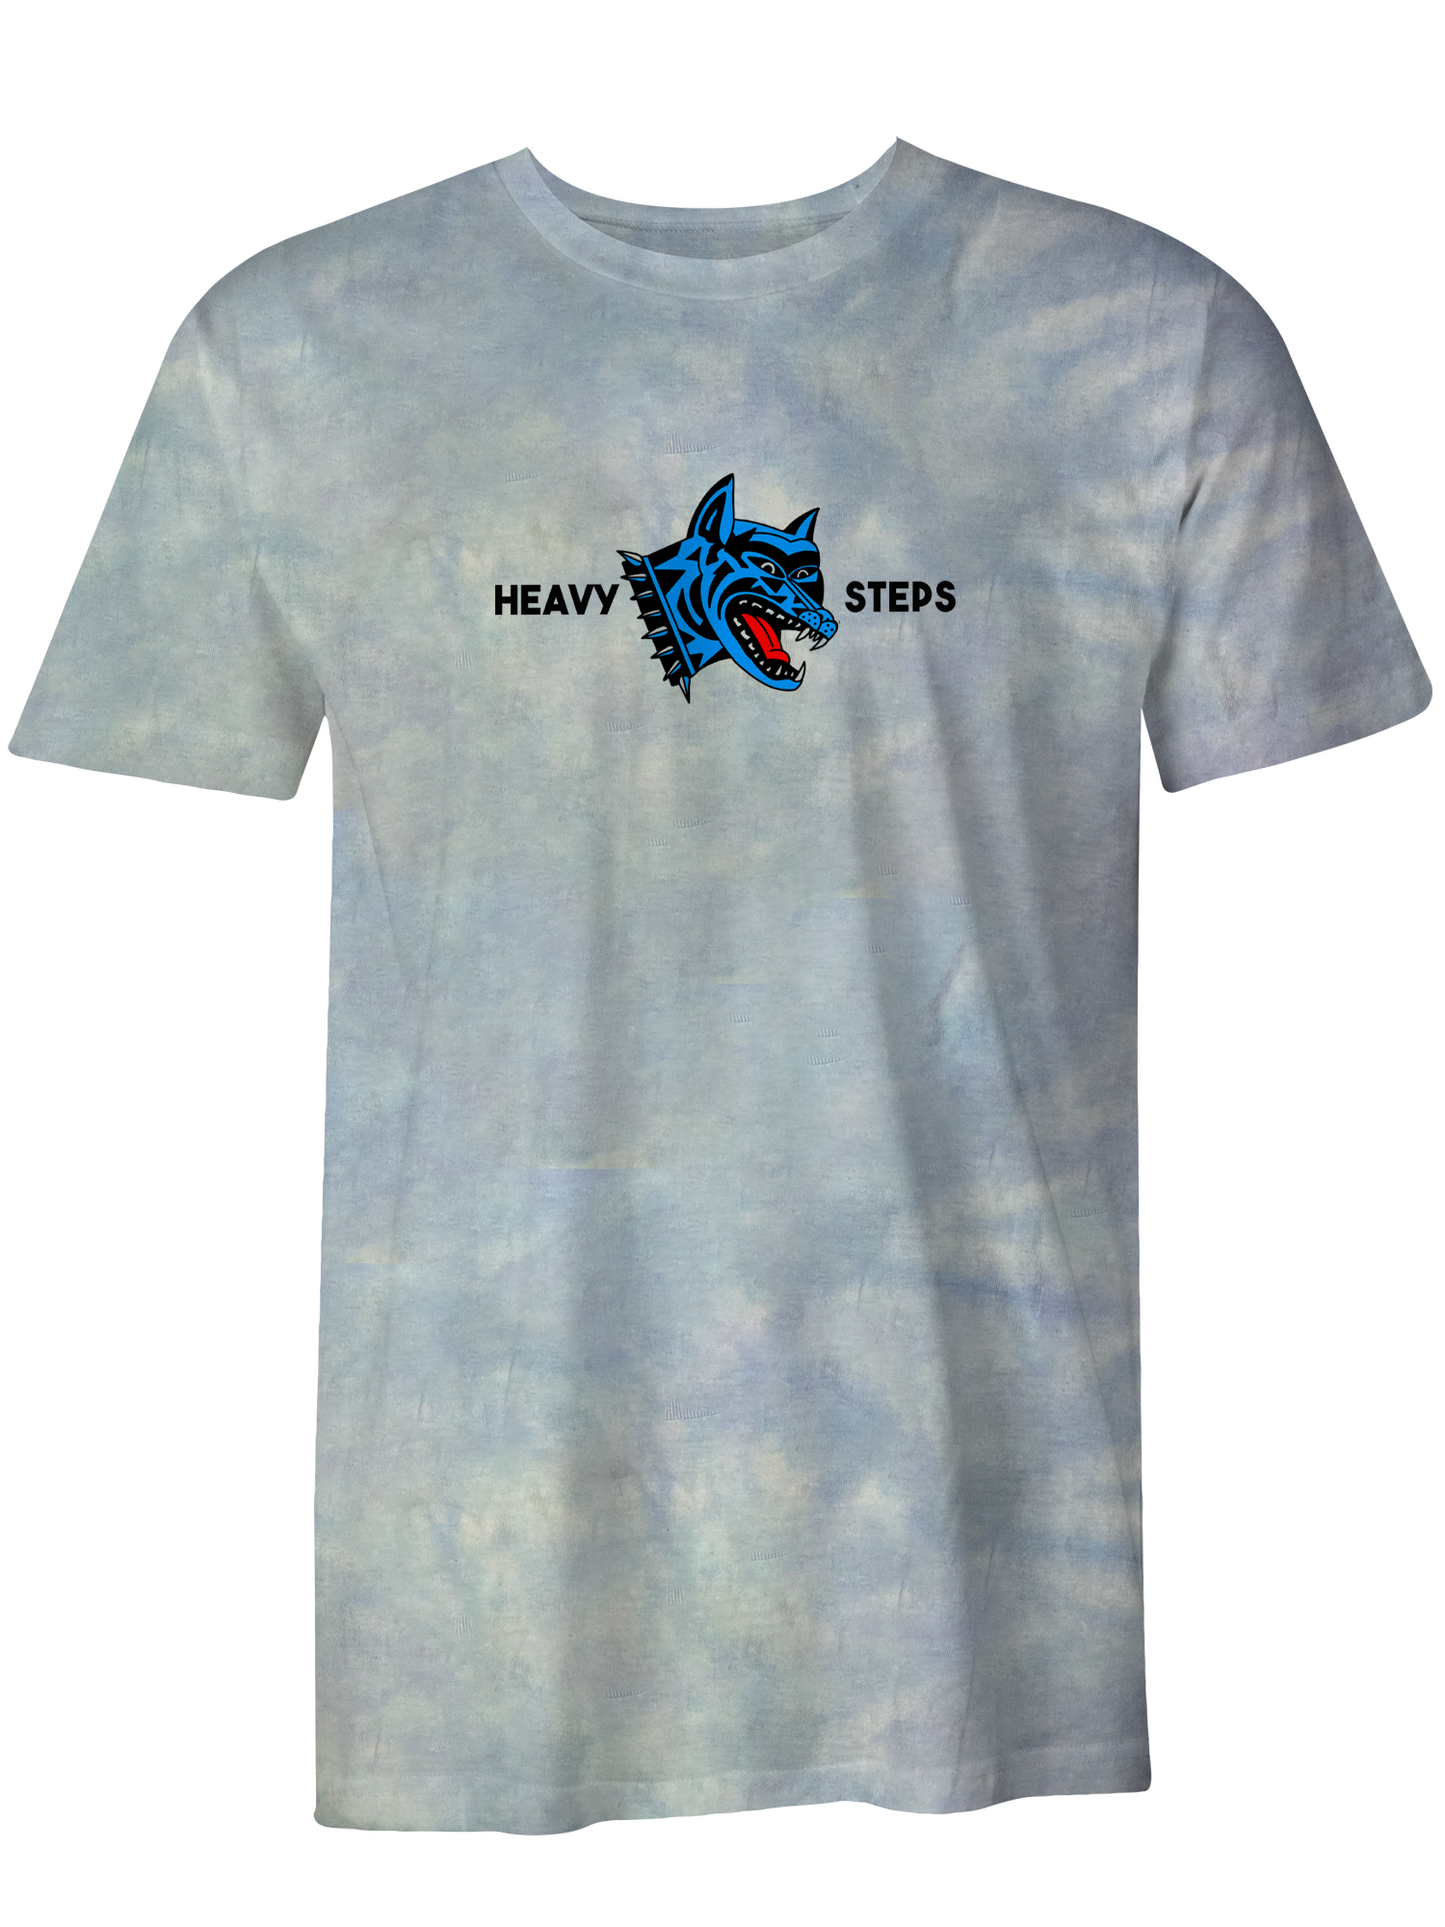 Heavy Steps Tie-Dye T-Shirt (Blue)